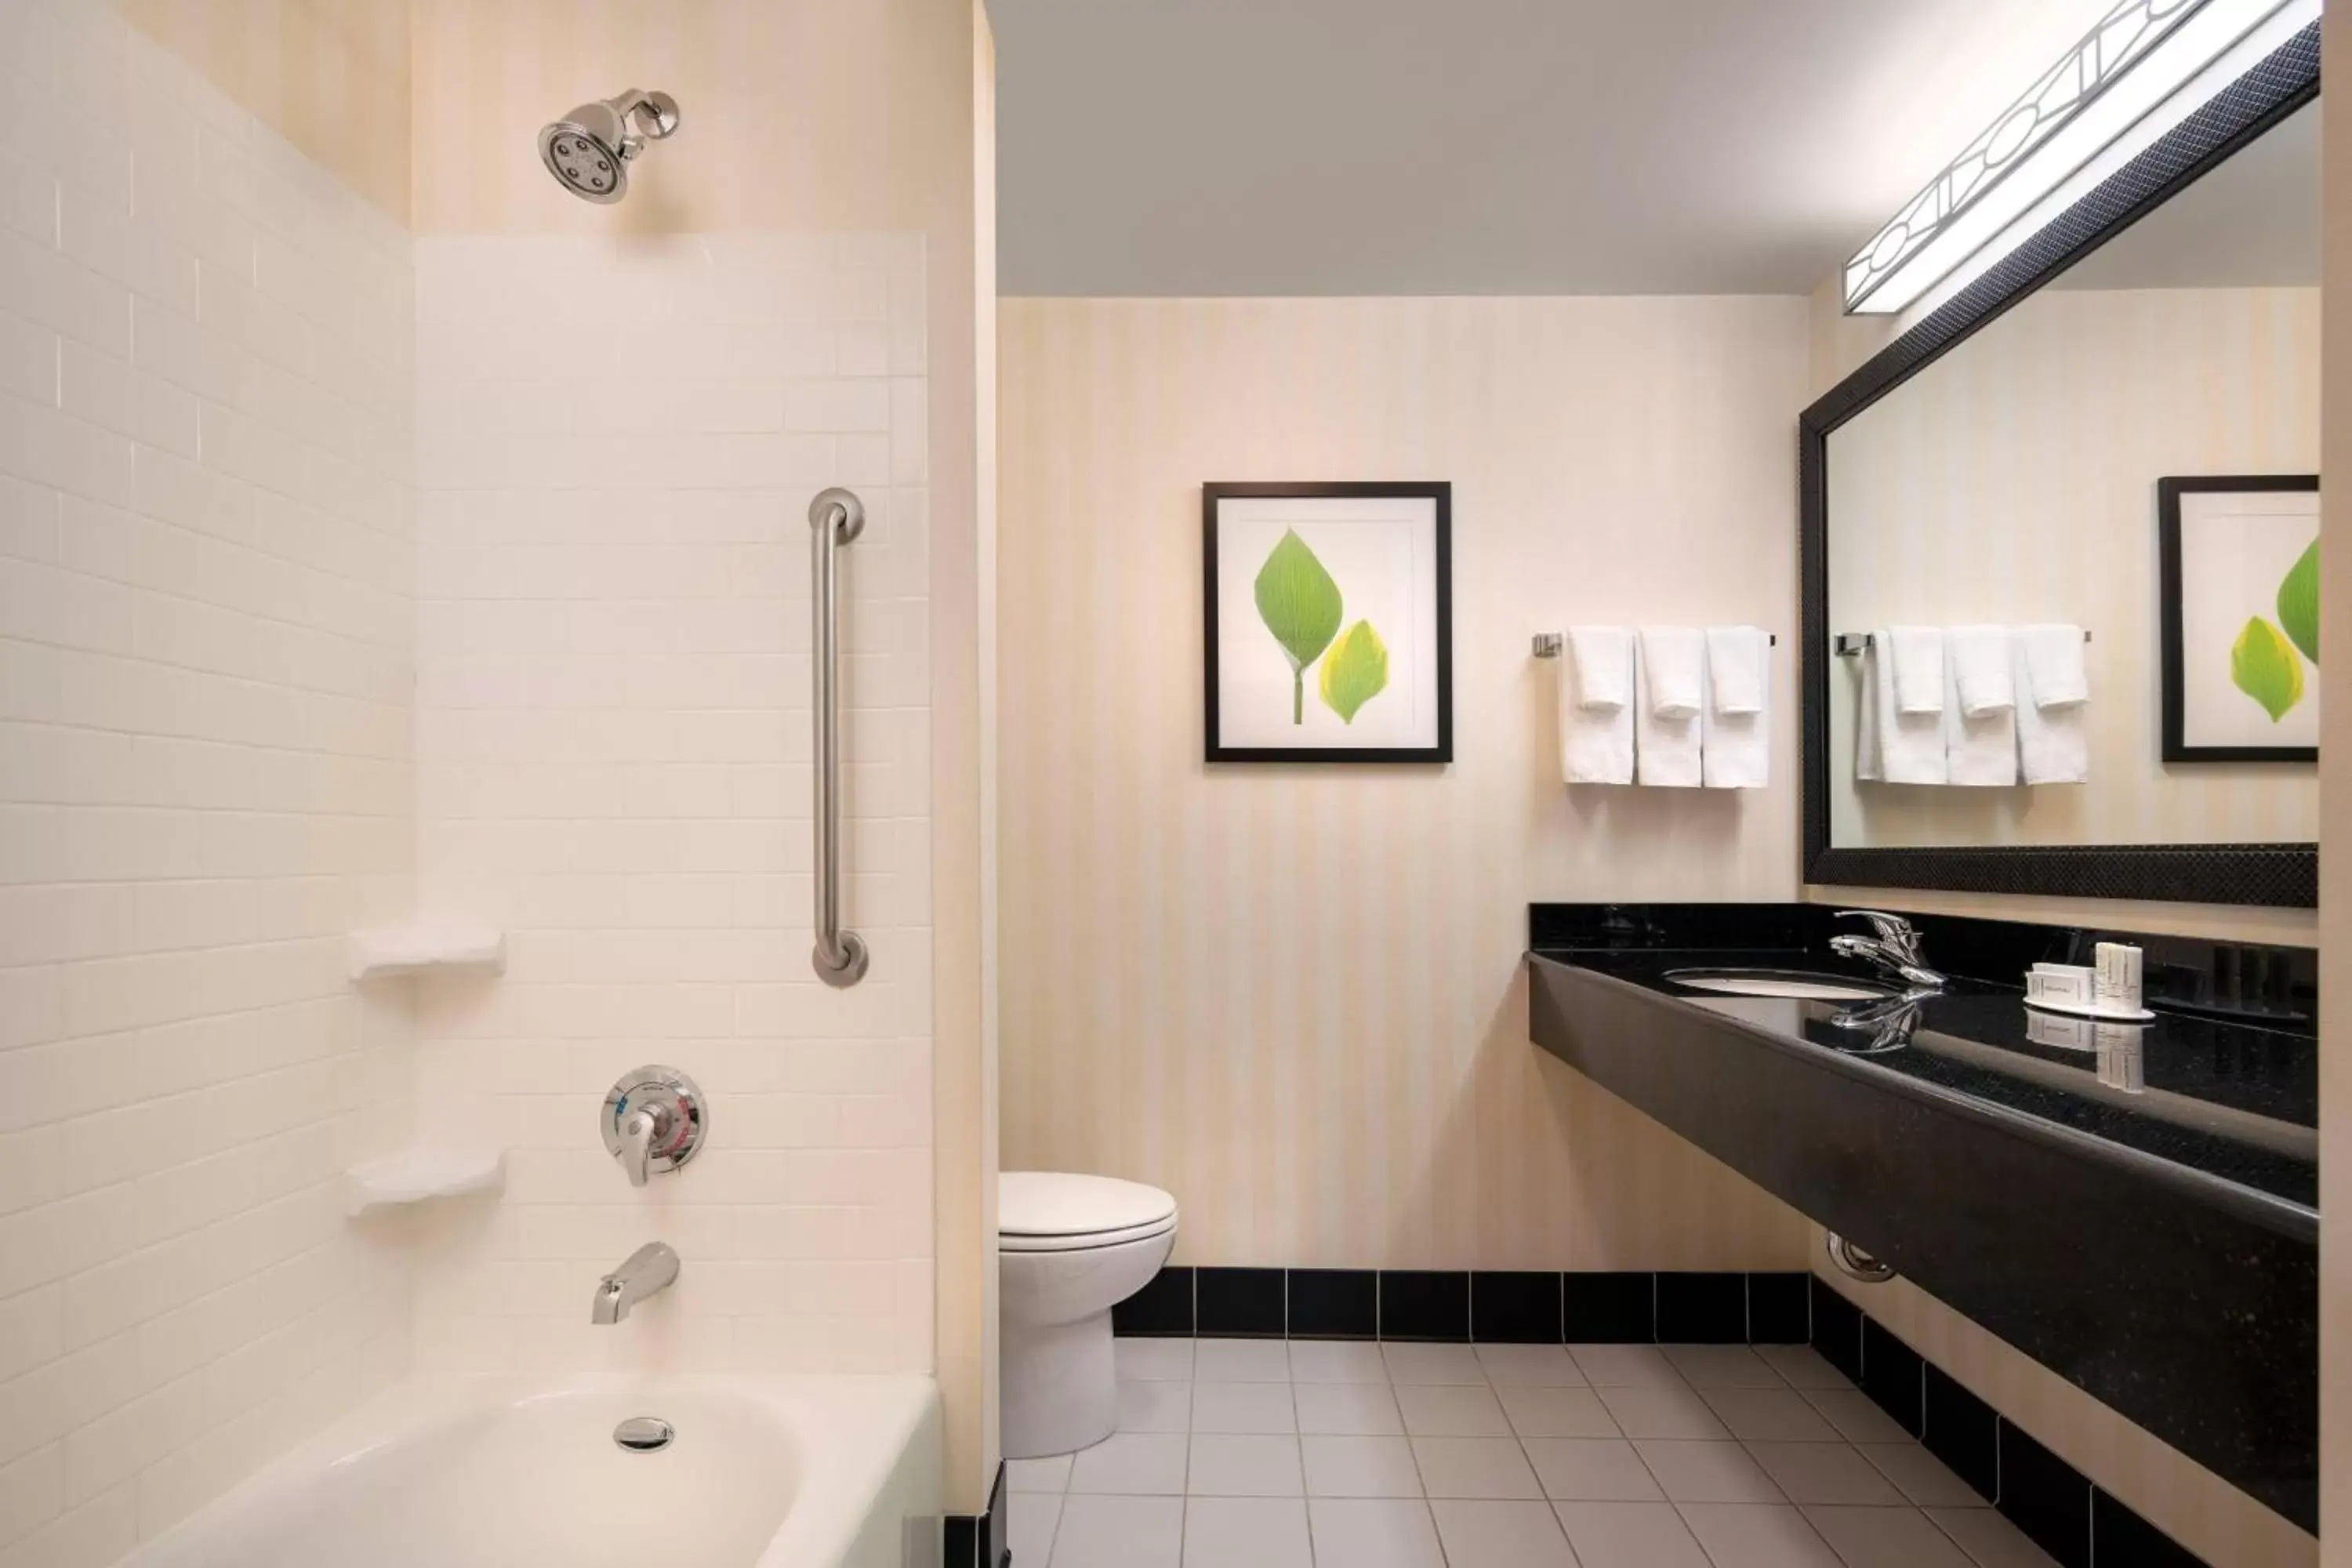 Bathroom in Fairfield Inn & Suites Redding